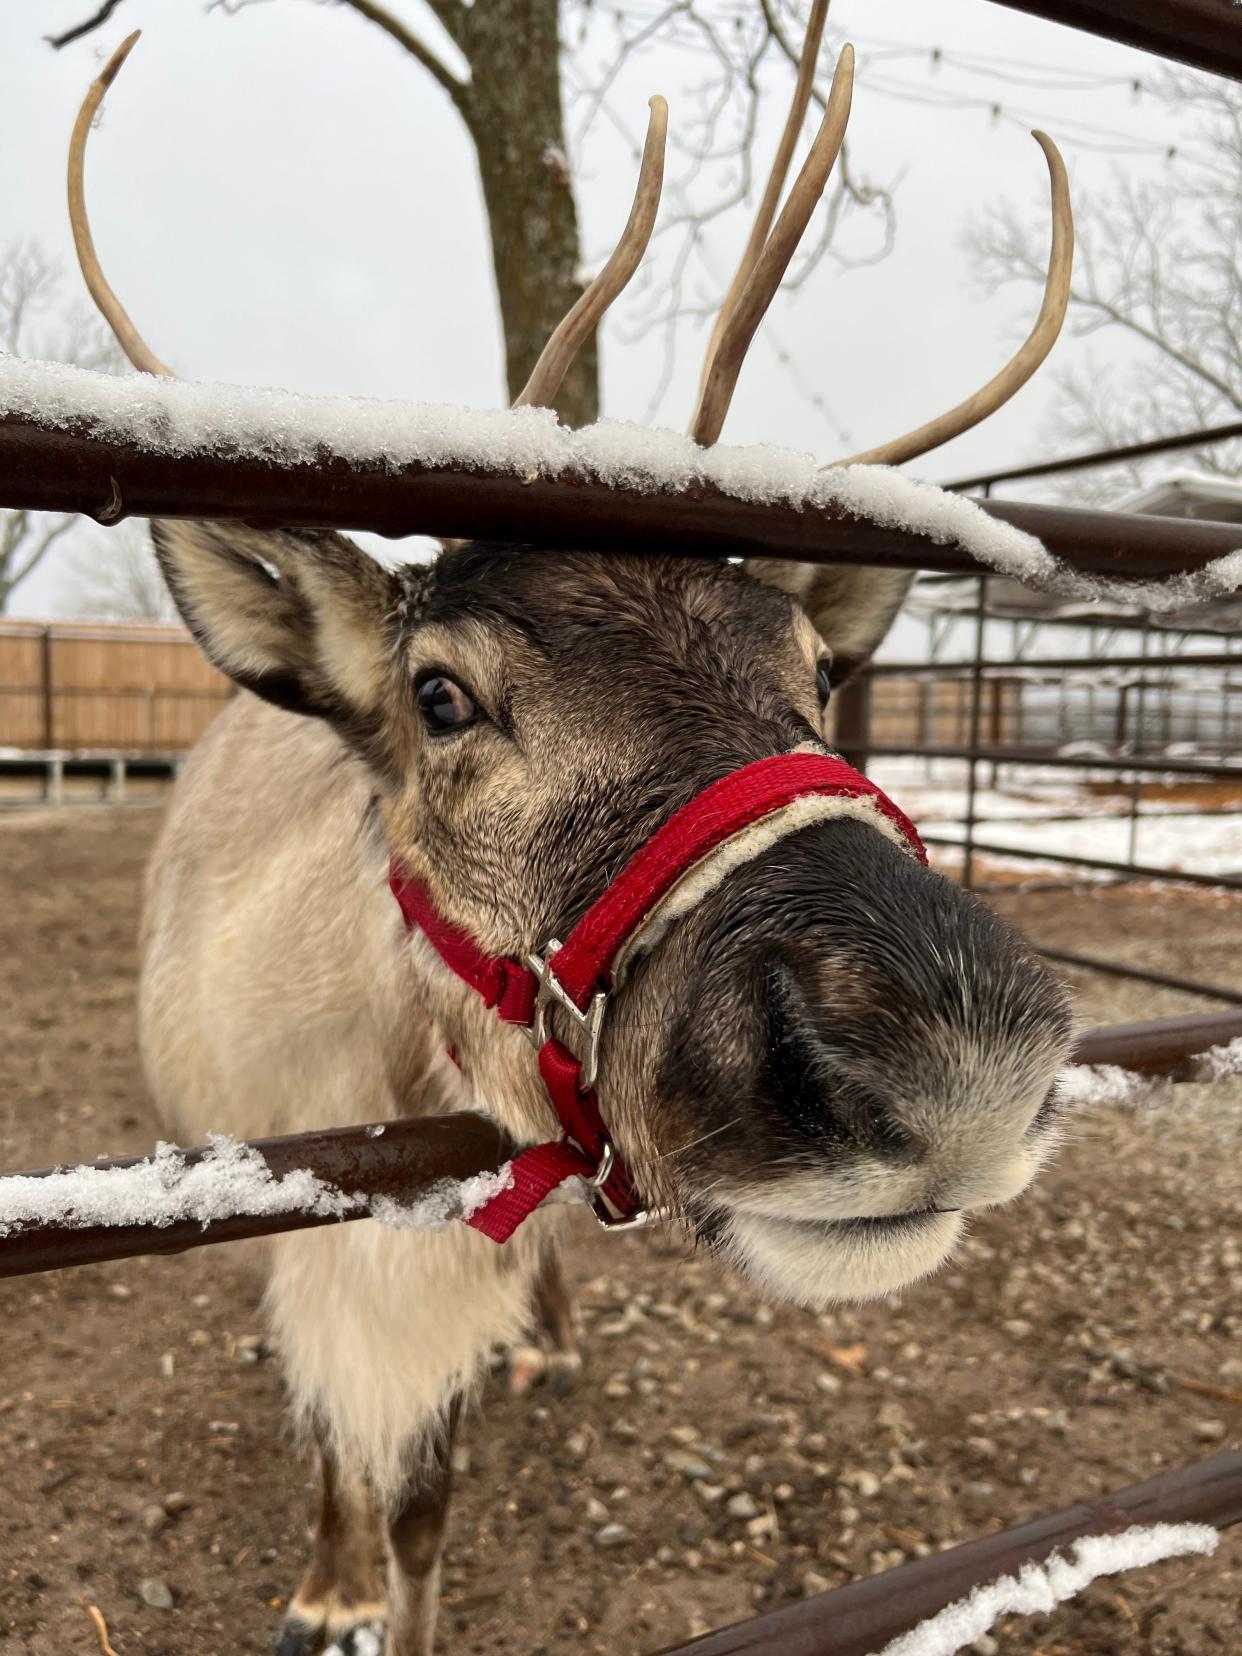 A reindeer at Prescott Reindeer Farm in Vanzant, Missouri. The farm is home to five reindeer: Noel, Tinsel, Winter, Snowflake and Mistletoe.